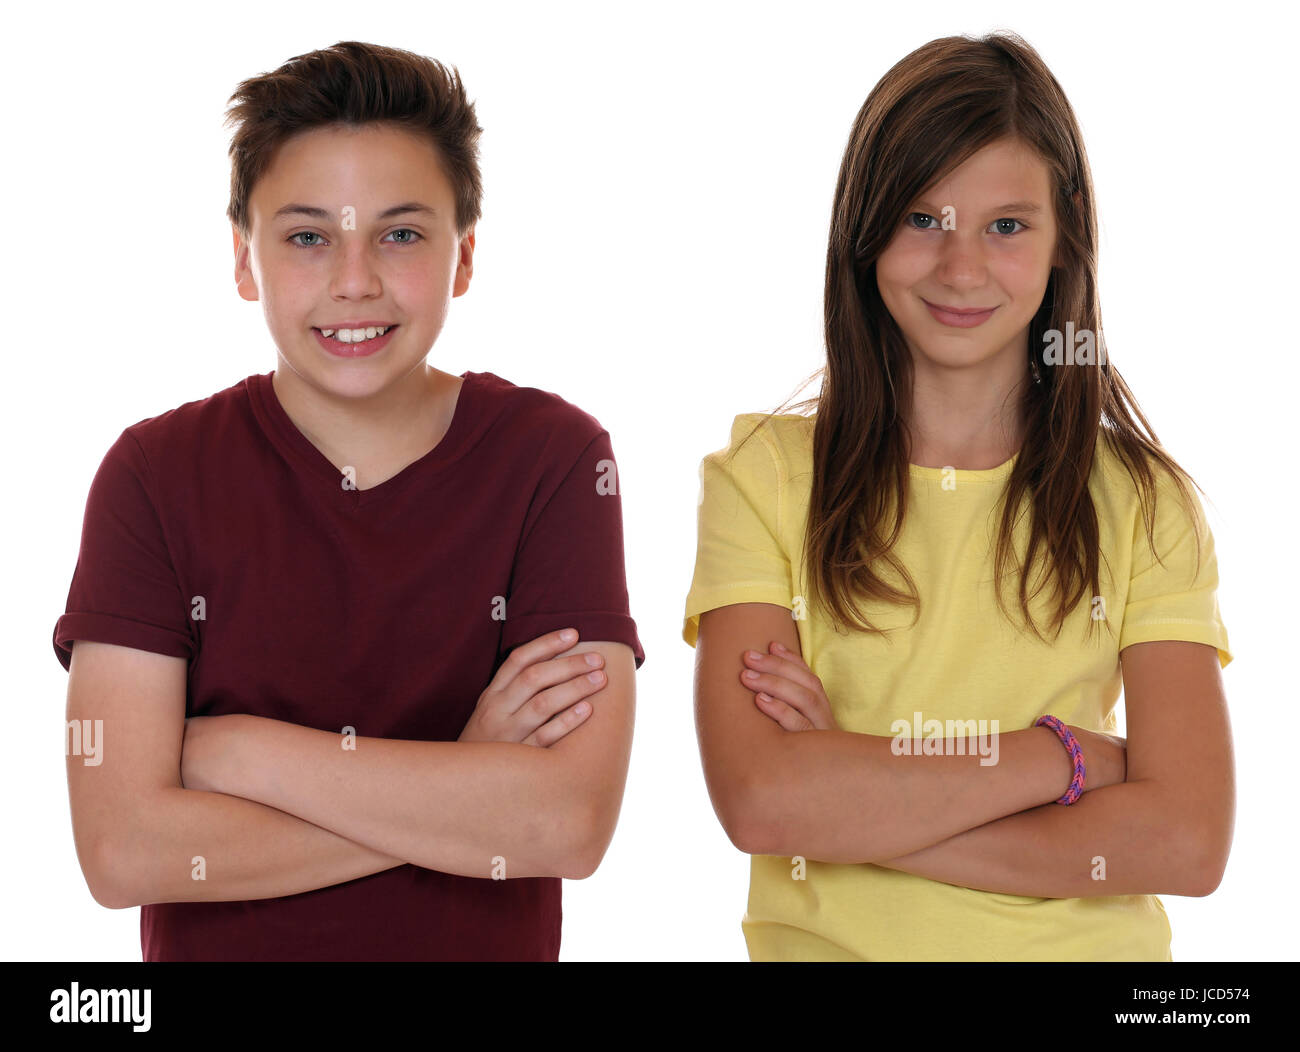 Junge Teenager Kinder Portrait mit verschränkten Armen isoliert vor einem weissen Hintergrund Stock Photo